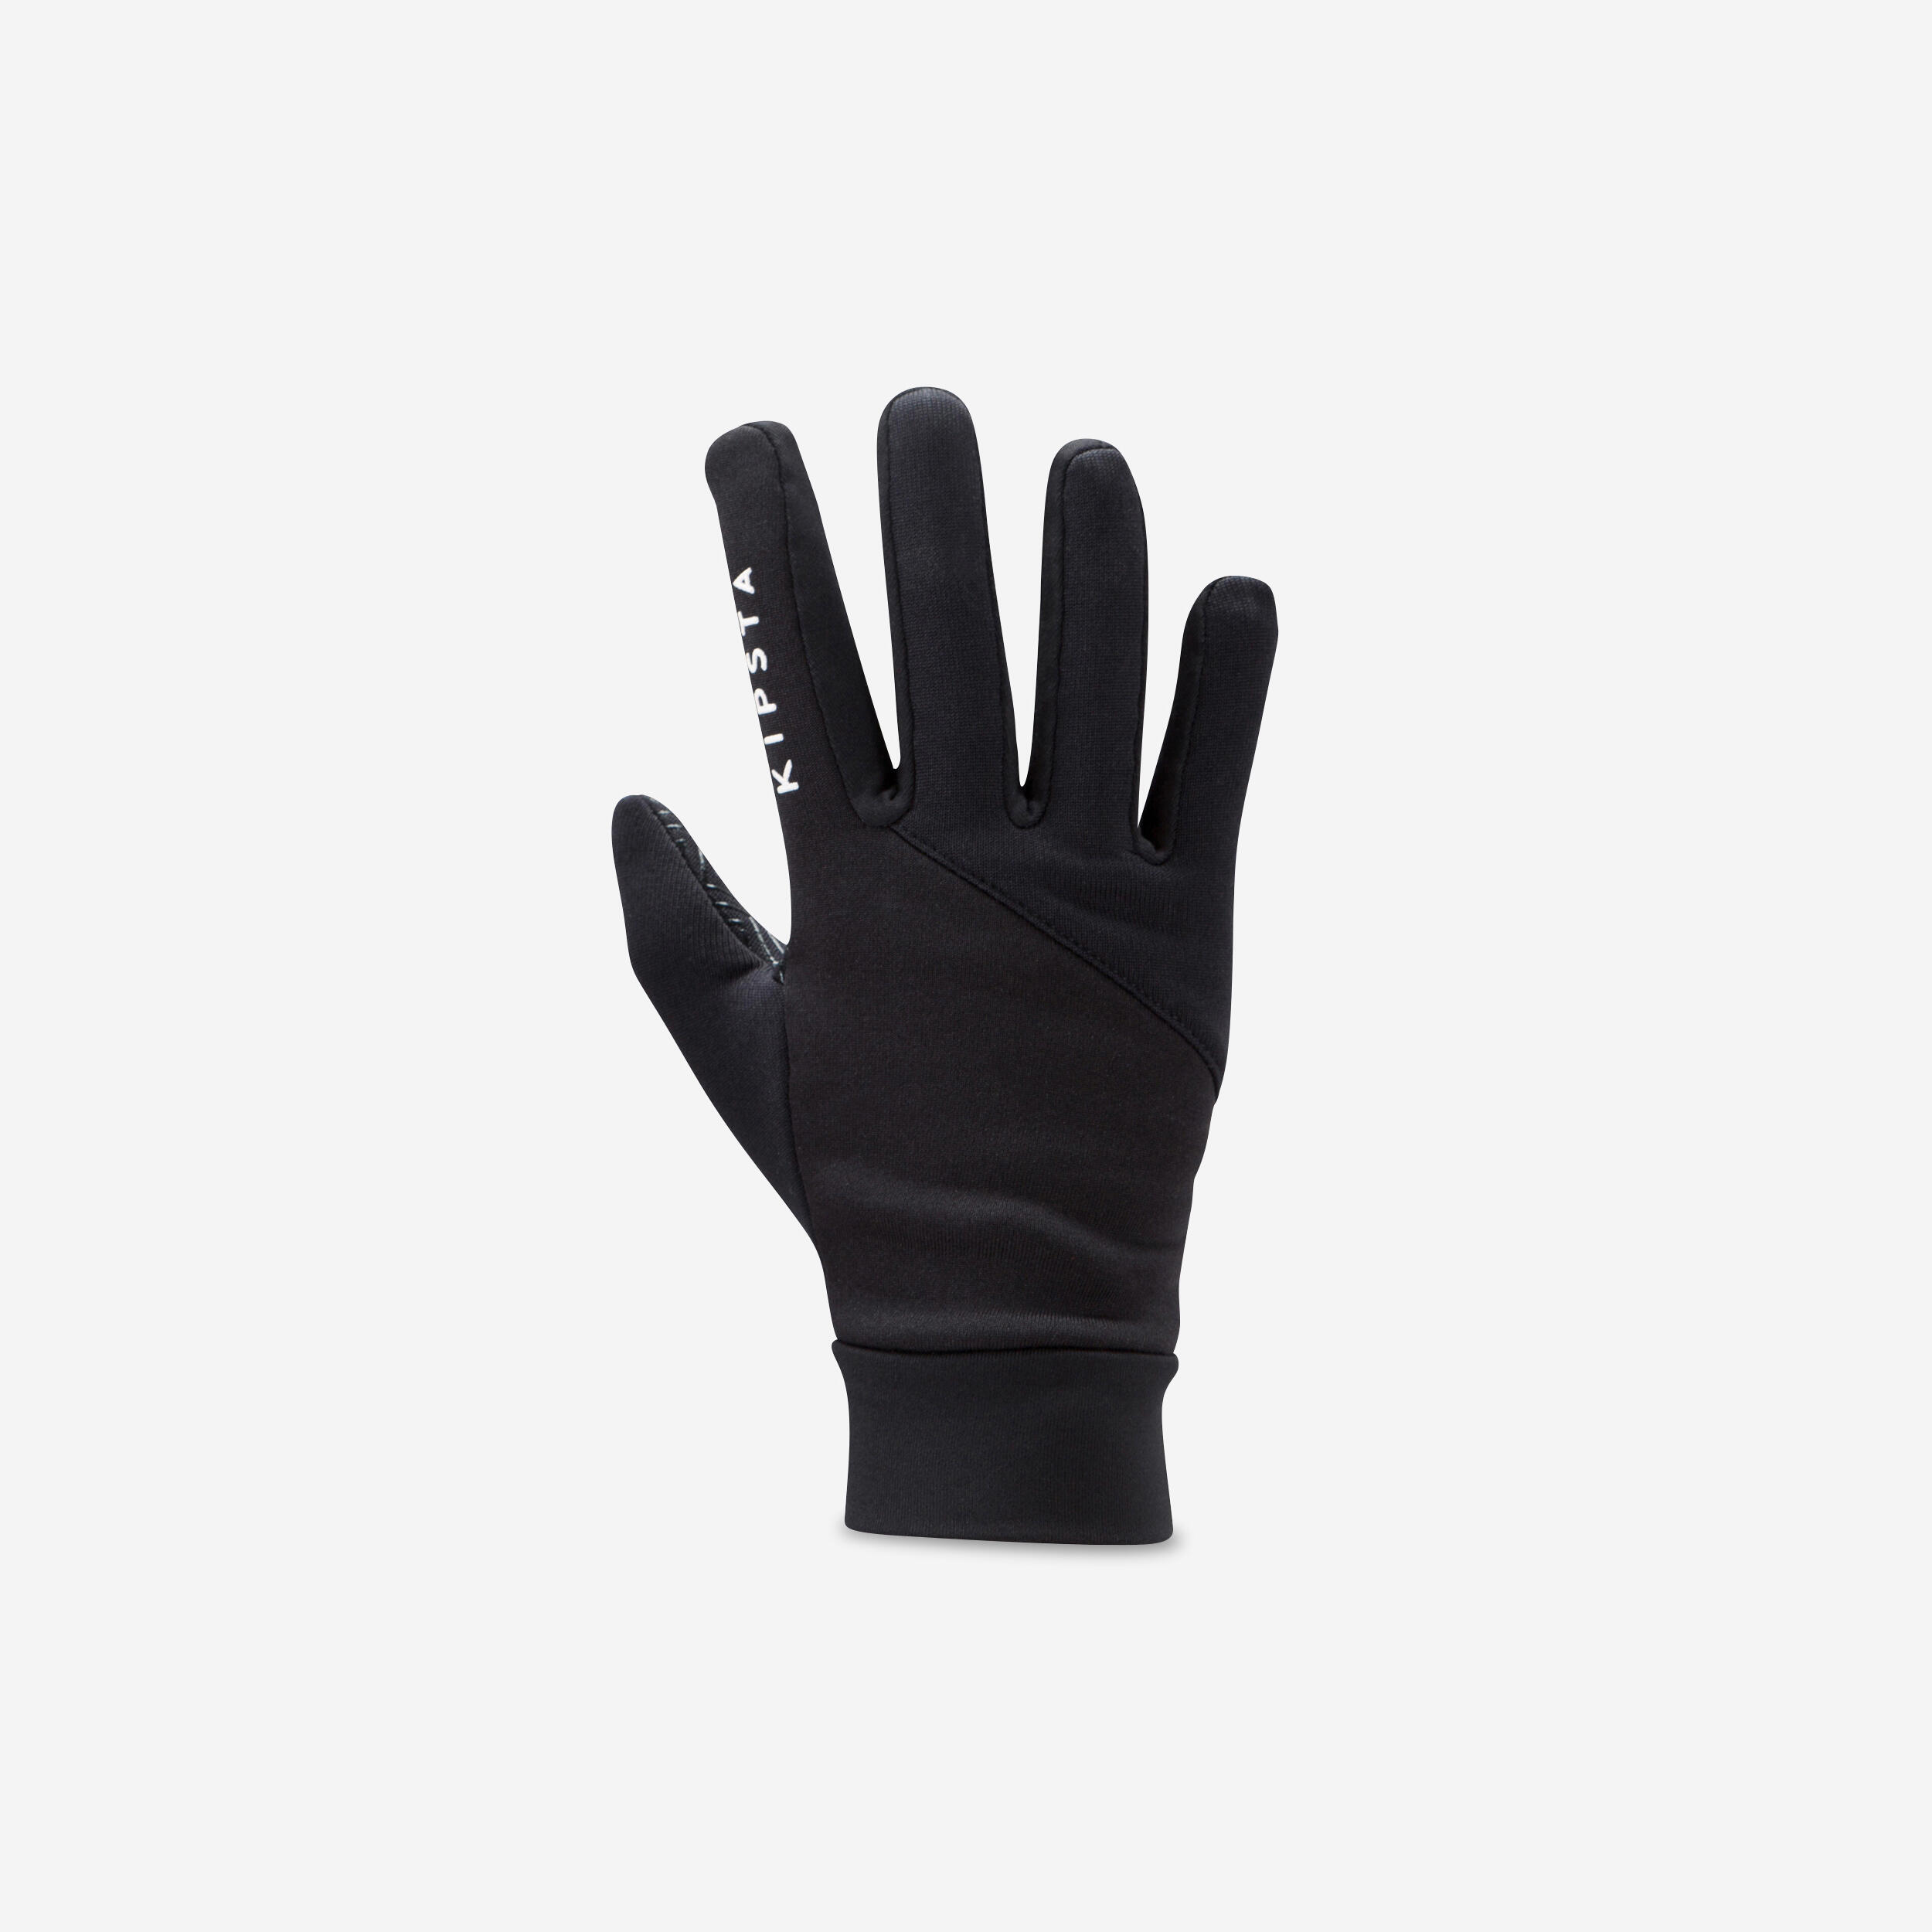 Kids' Football Gloves Keepdry 500 - Black 1/6